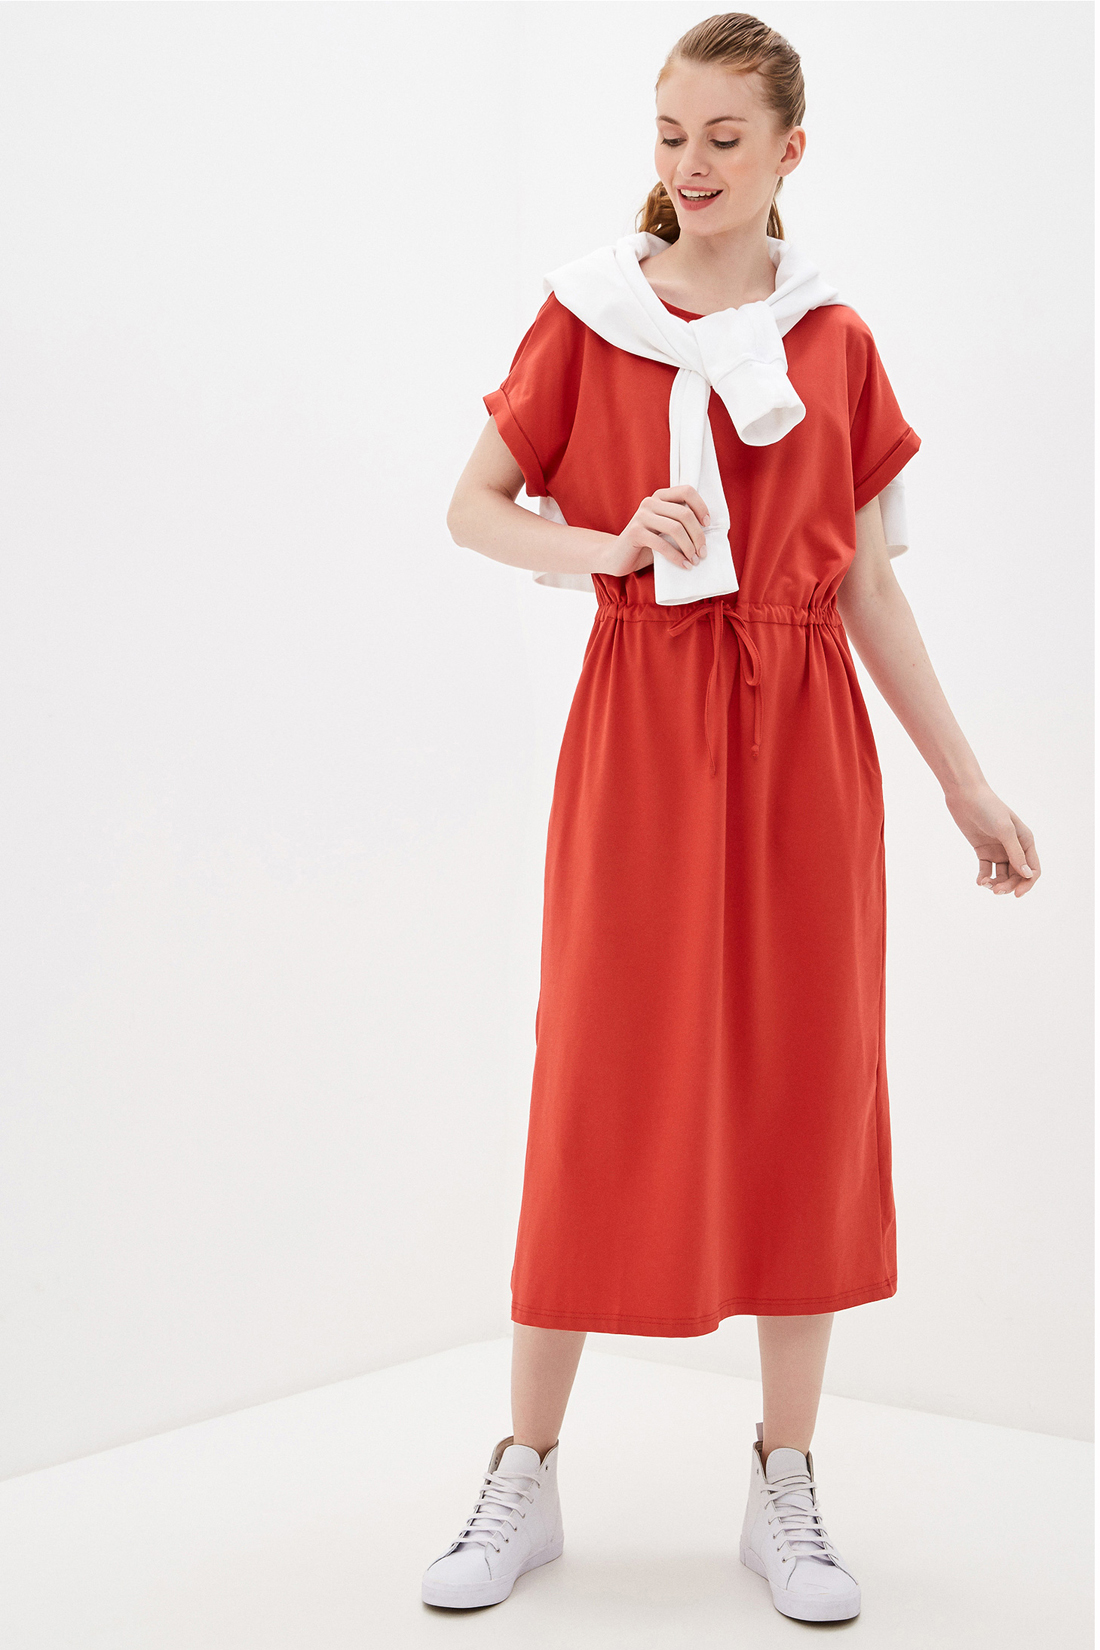 Трикотажное платье (арт. baon B450082), размер XS, цвет красный Трикотажное платье (арт. baon B450082) - фото 1